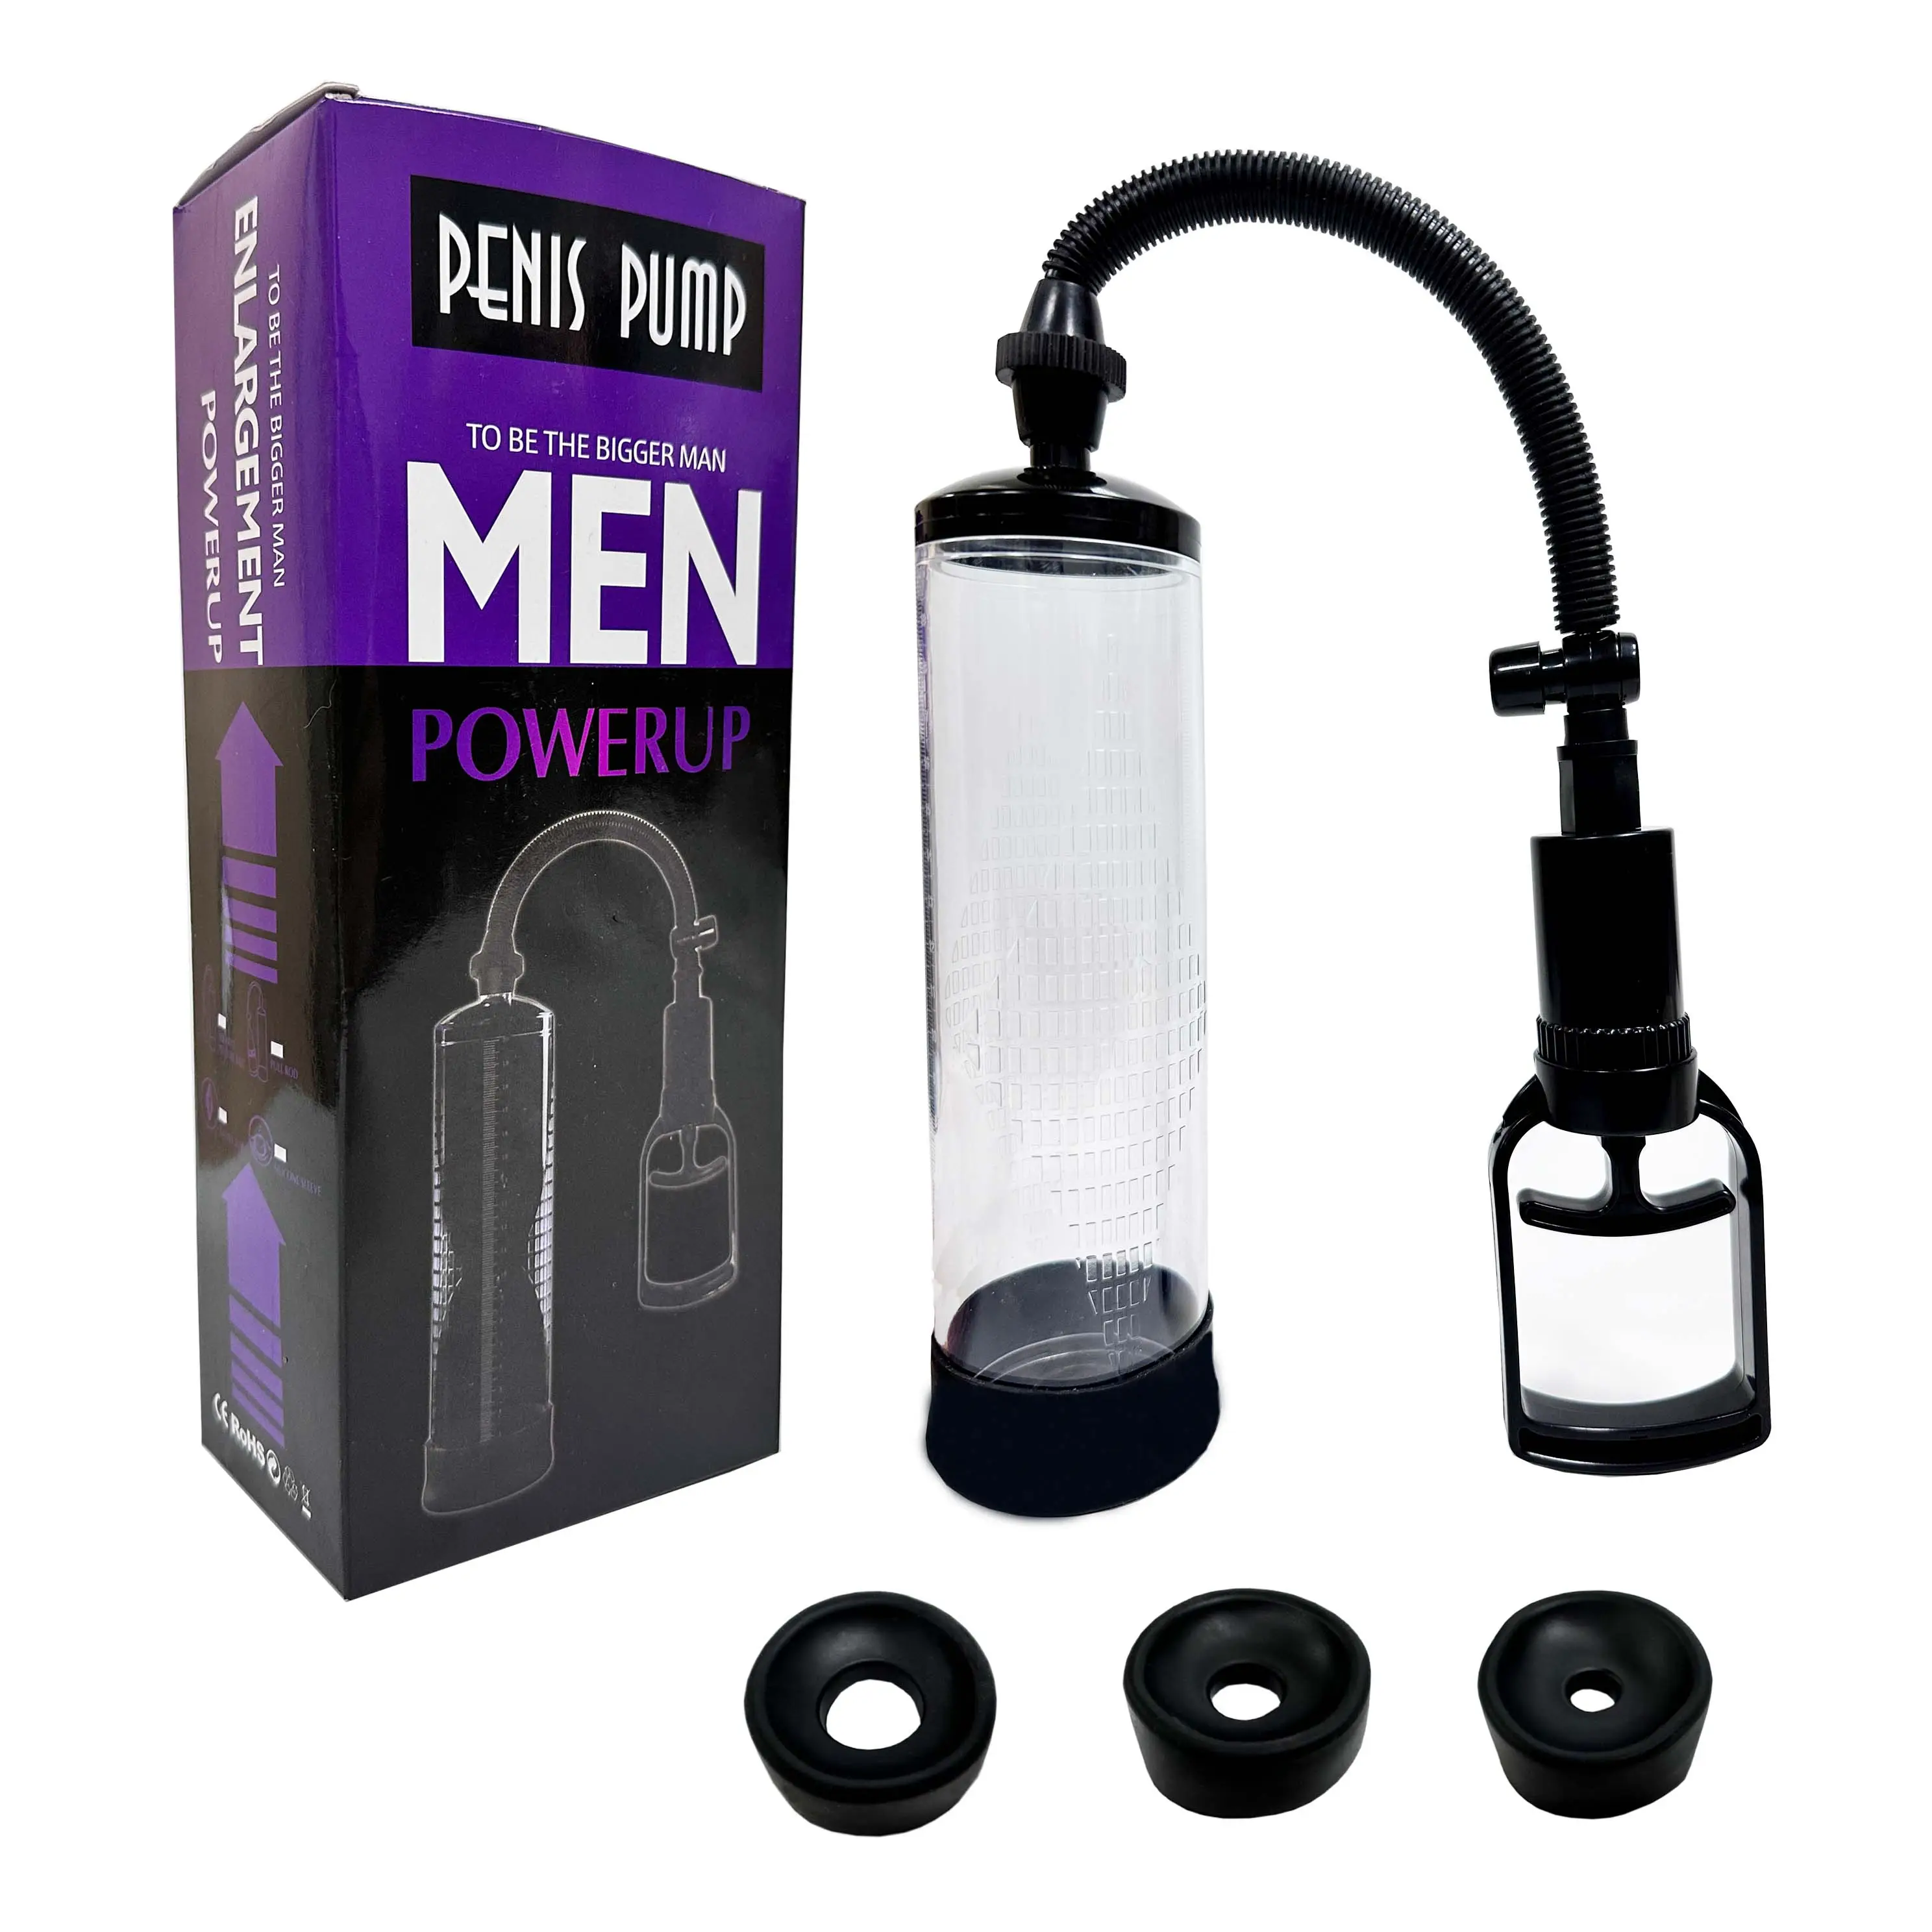 Bestseller Sexspielzeug Erwachsenenspielzeug für Männer Penispumpe Vergrößerer